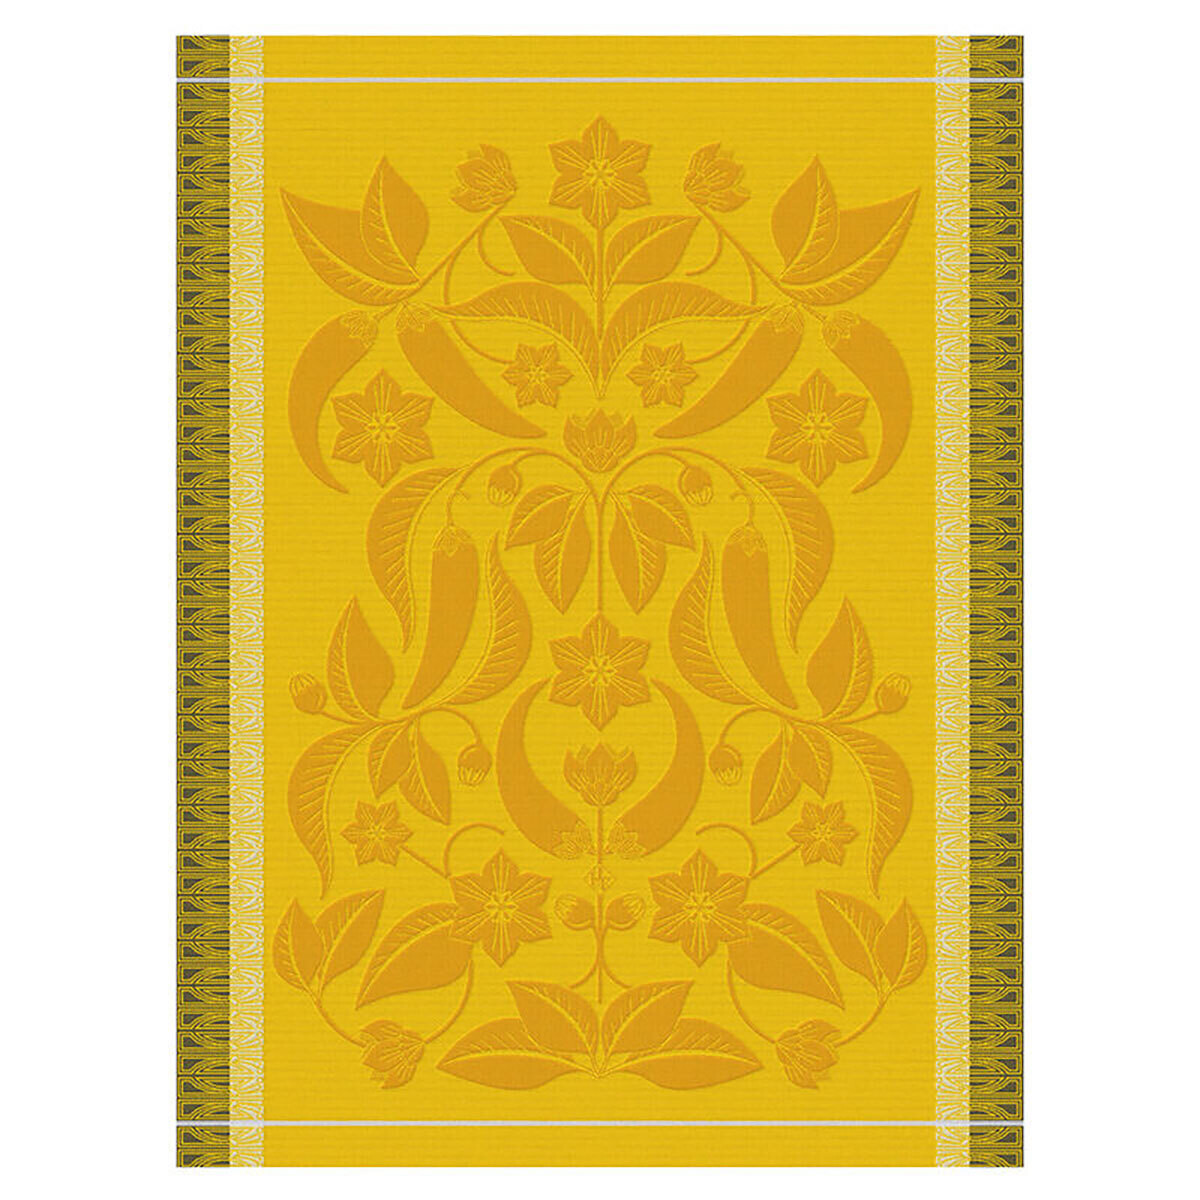 Le Jacquard Francais Piments Yellow Tea Towel 28981 Set of 4